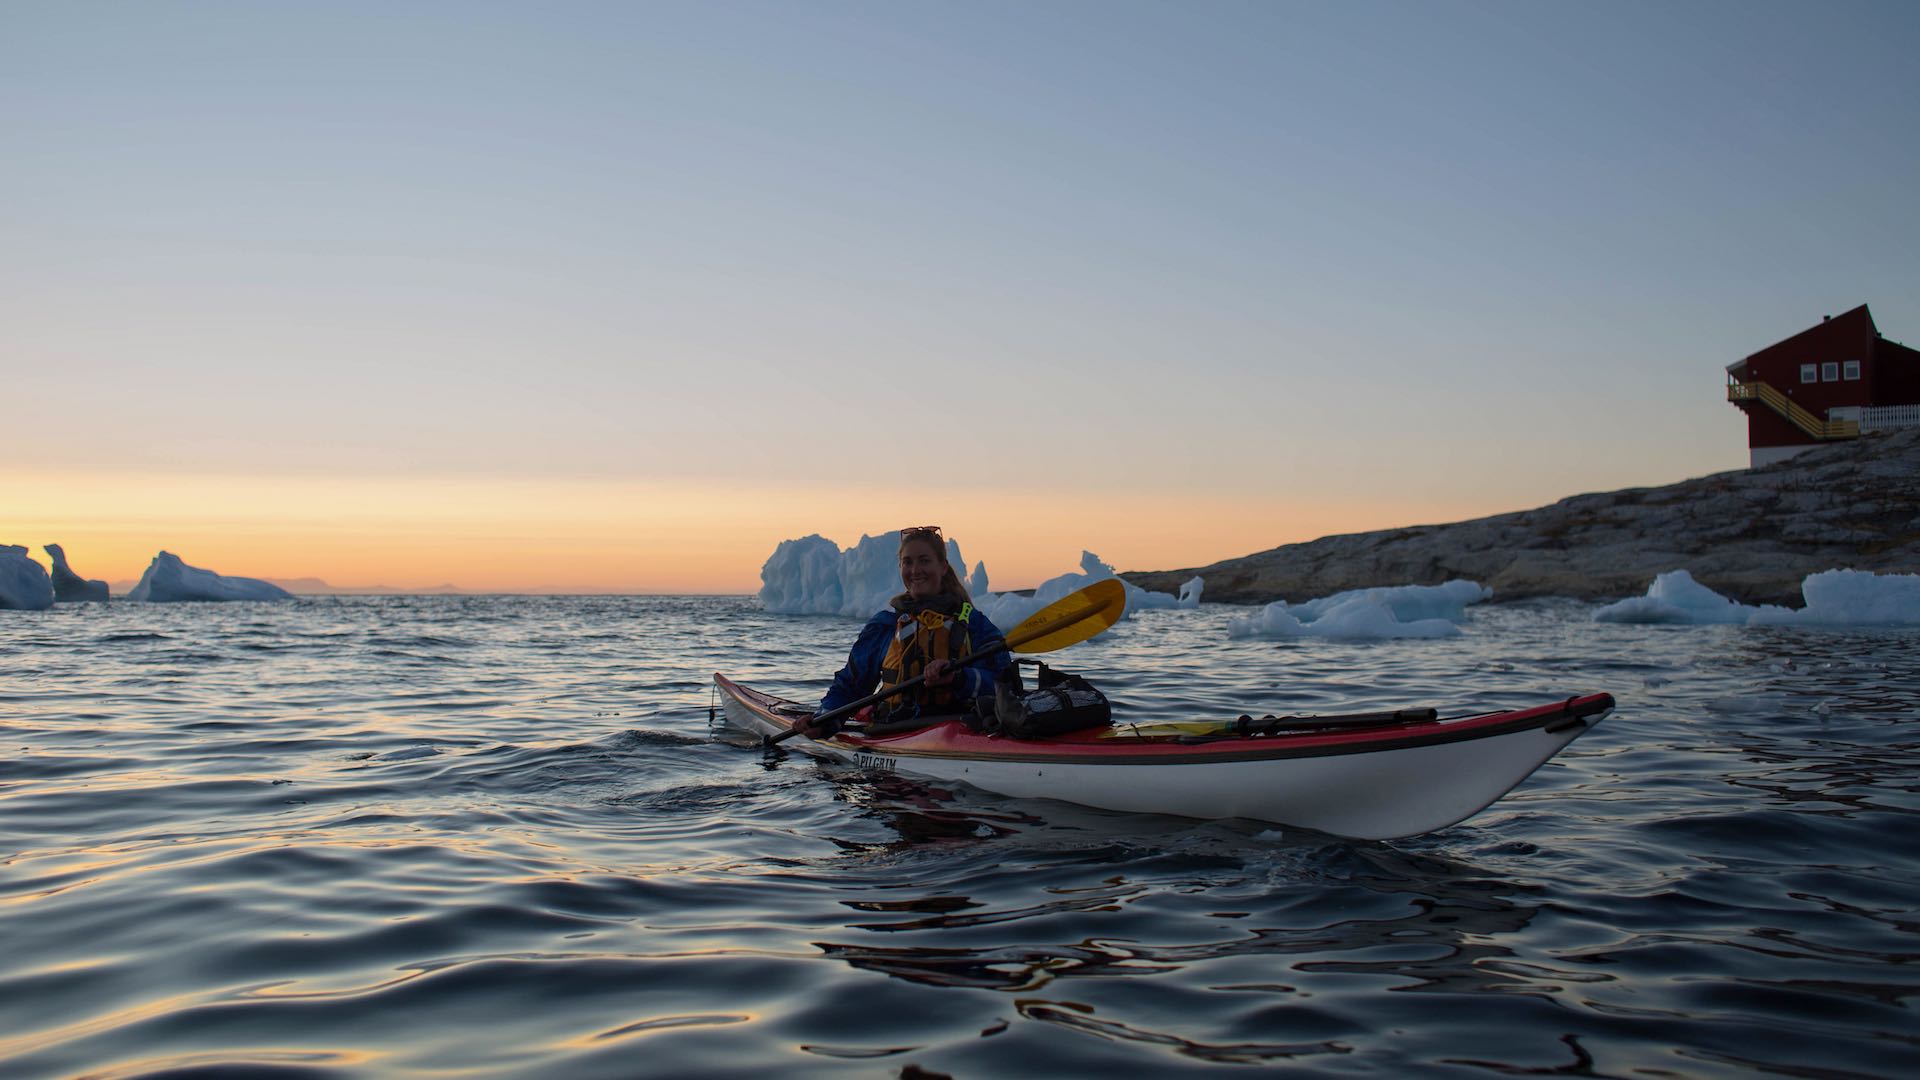 grit Raffinere Svane 16 dage - Kajakeventyr i hjertet af Grønland - Arctic Friend